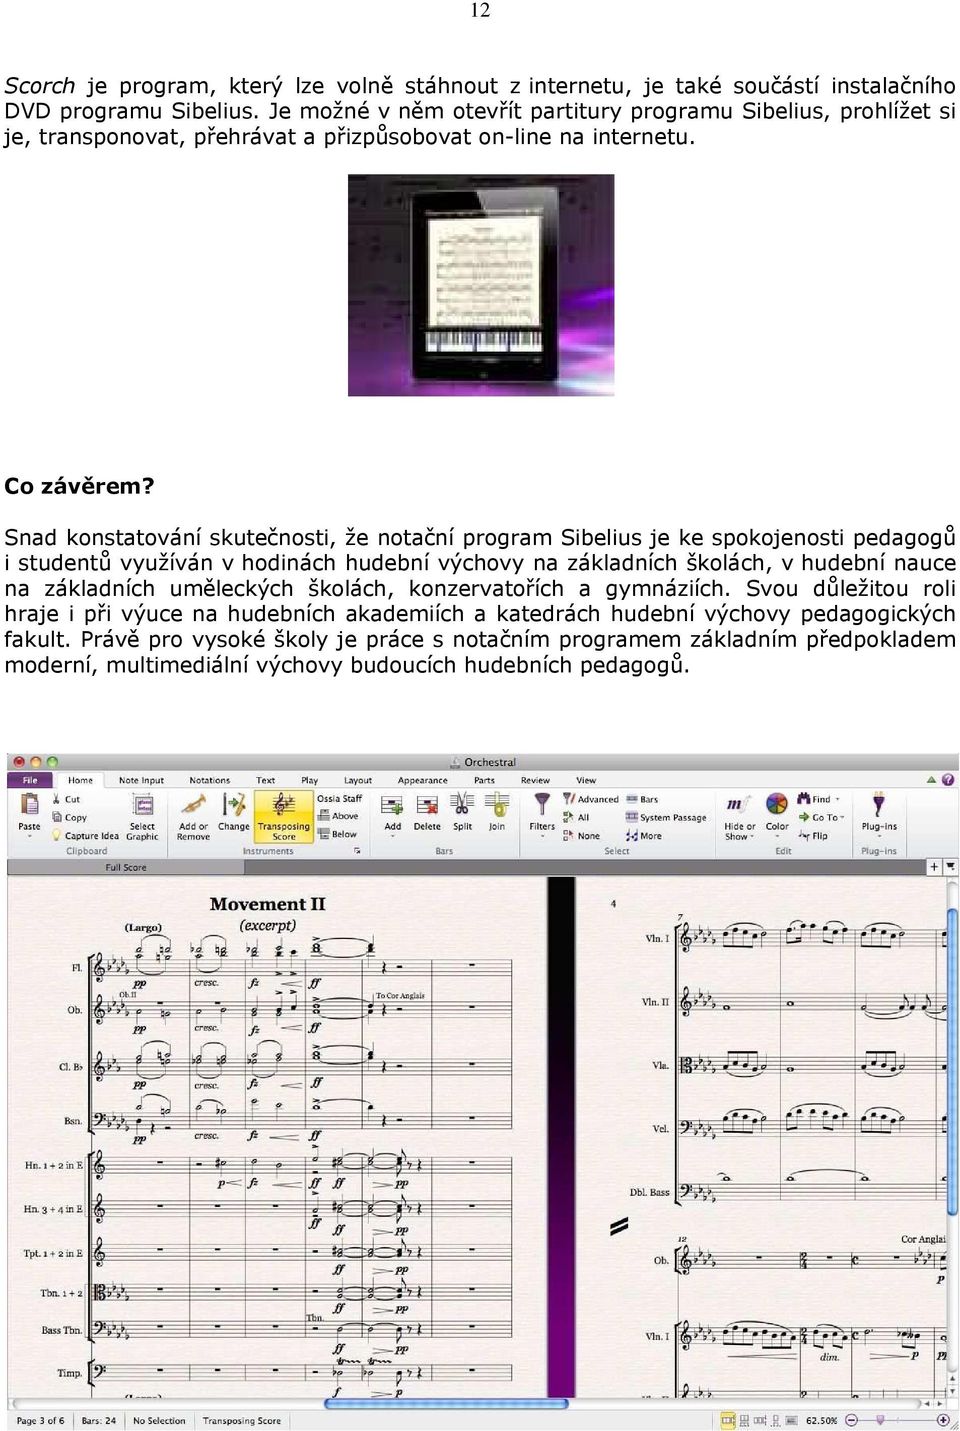 Snad konstatování skutečnosti, že notační program Sibelius je ke spokojenosti pedagogů i studentů využíván v hodinách hudební výchovy na základních školách, v hudební nauce na